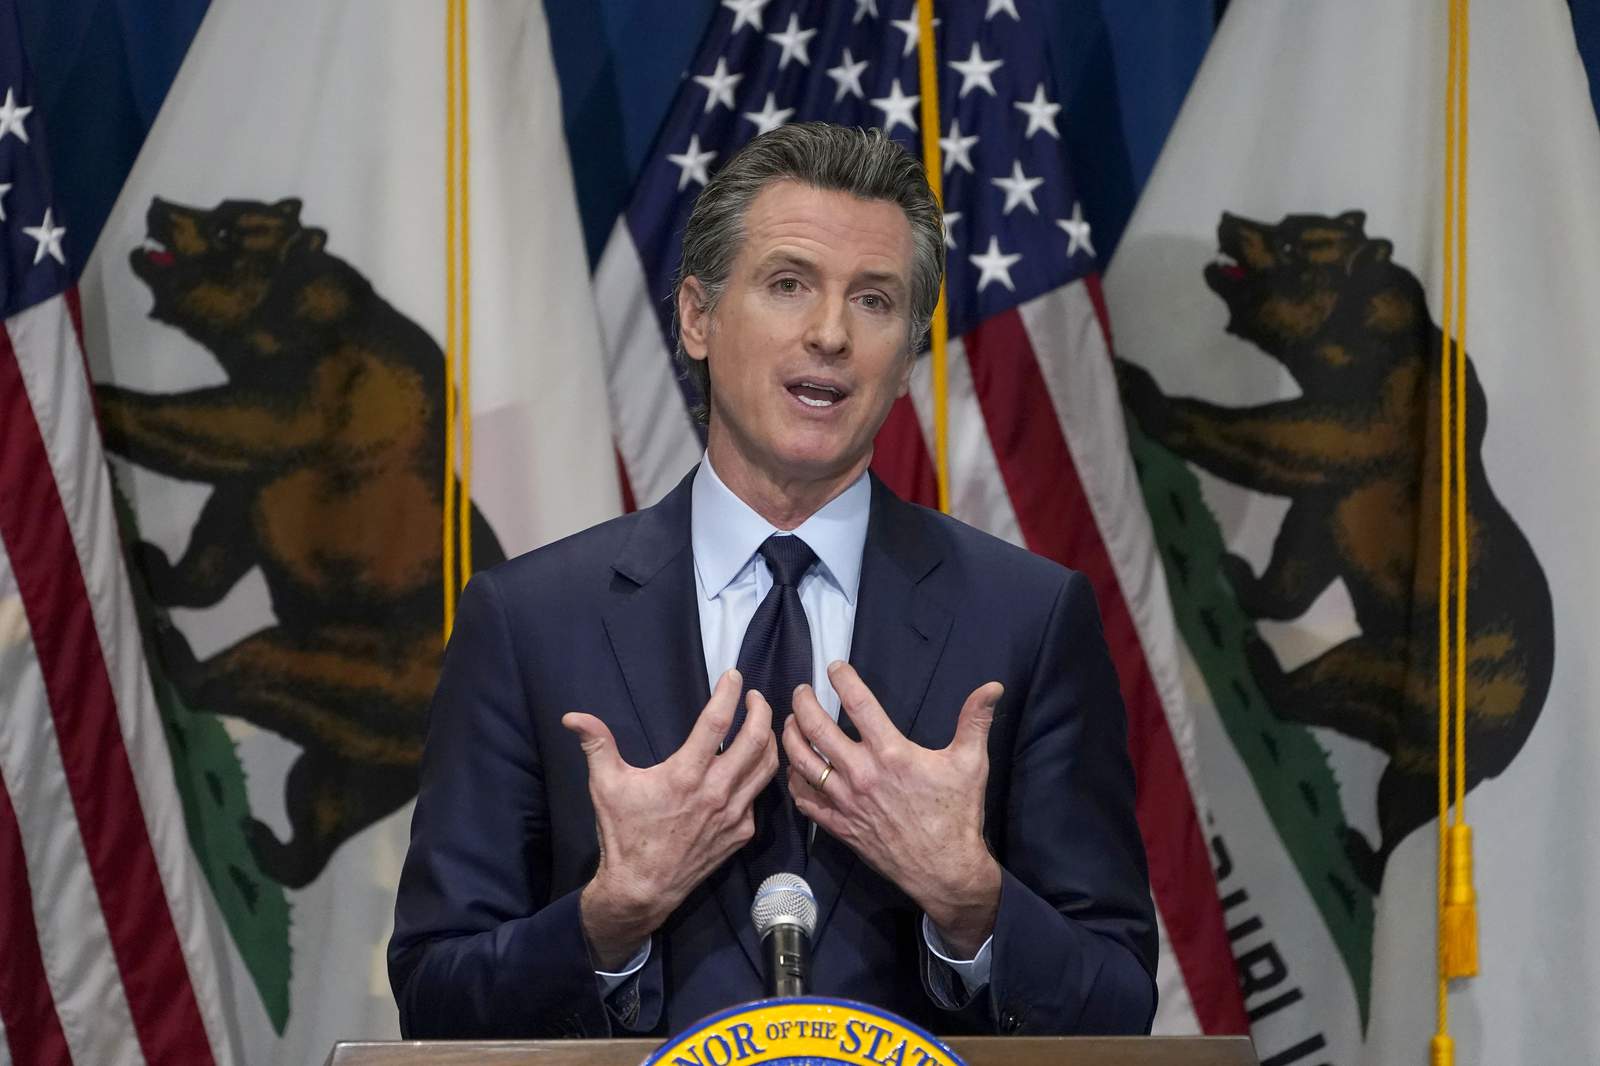 EXPLAINER: Why is California Gov. Newsom facing a recall?